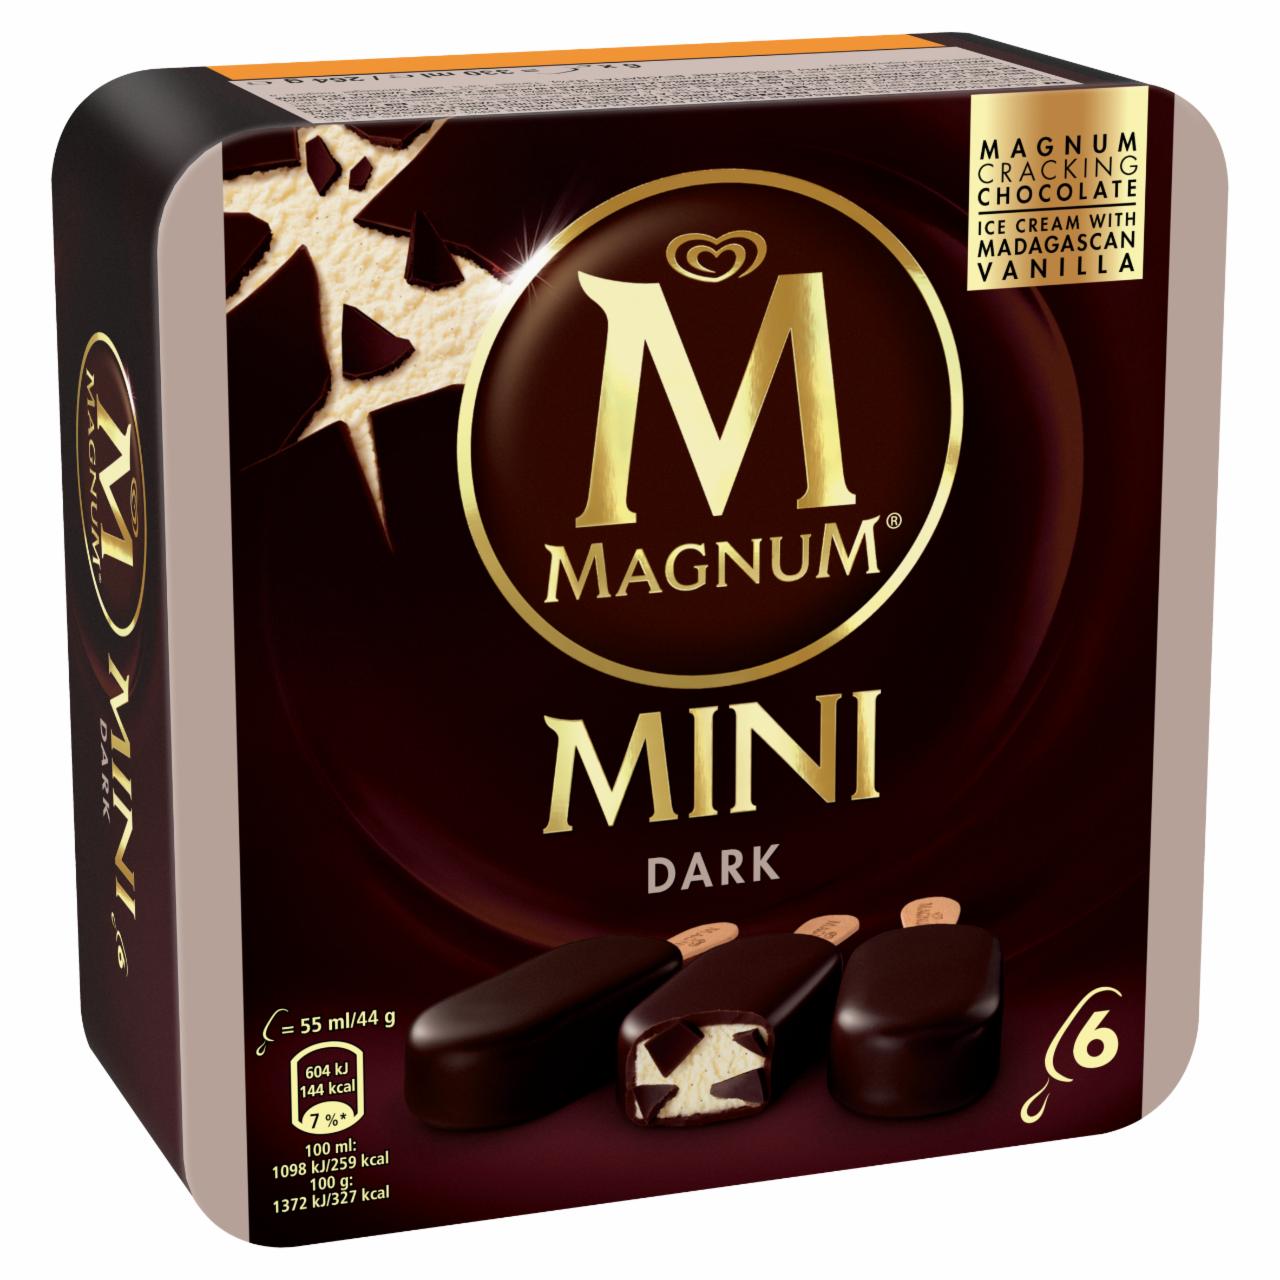 Képek - Magnum Mini Multipack Dark jégkrém 6 x 55 ml